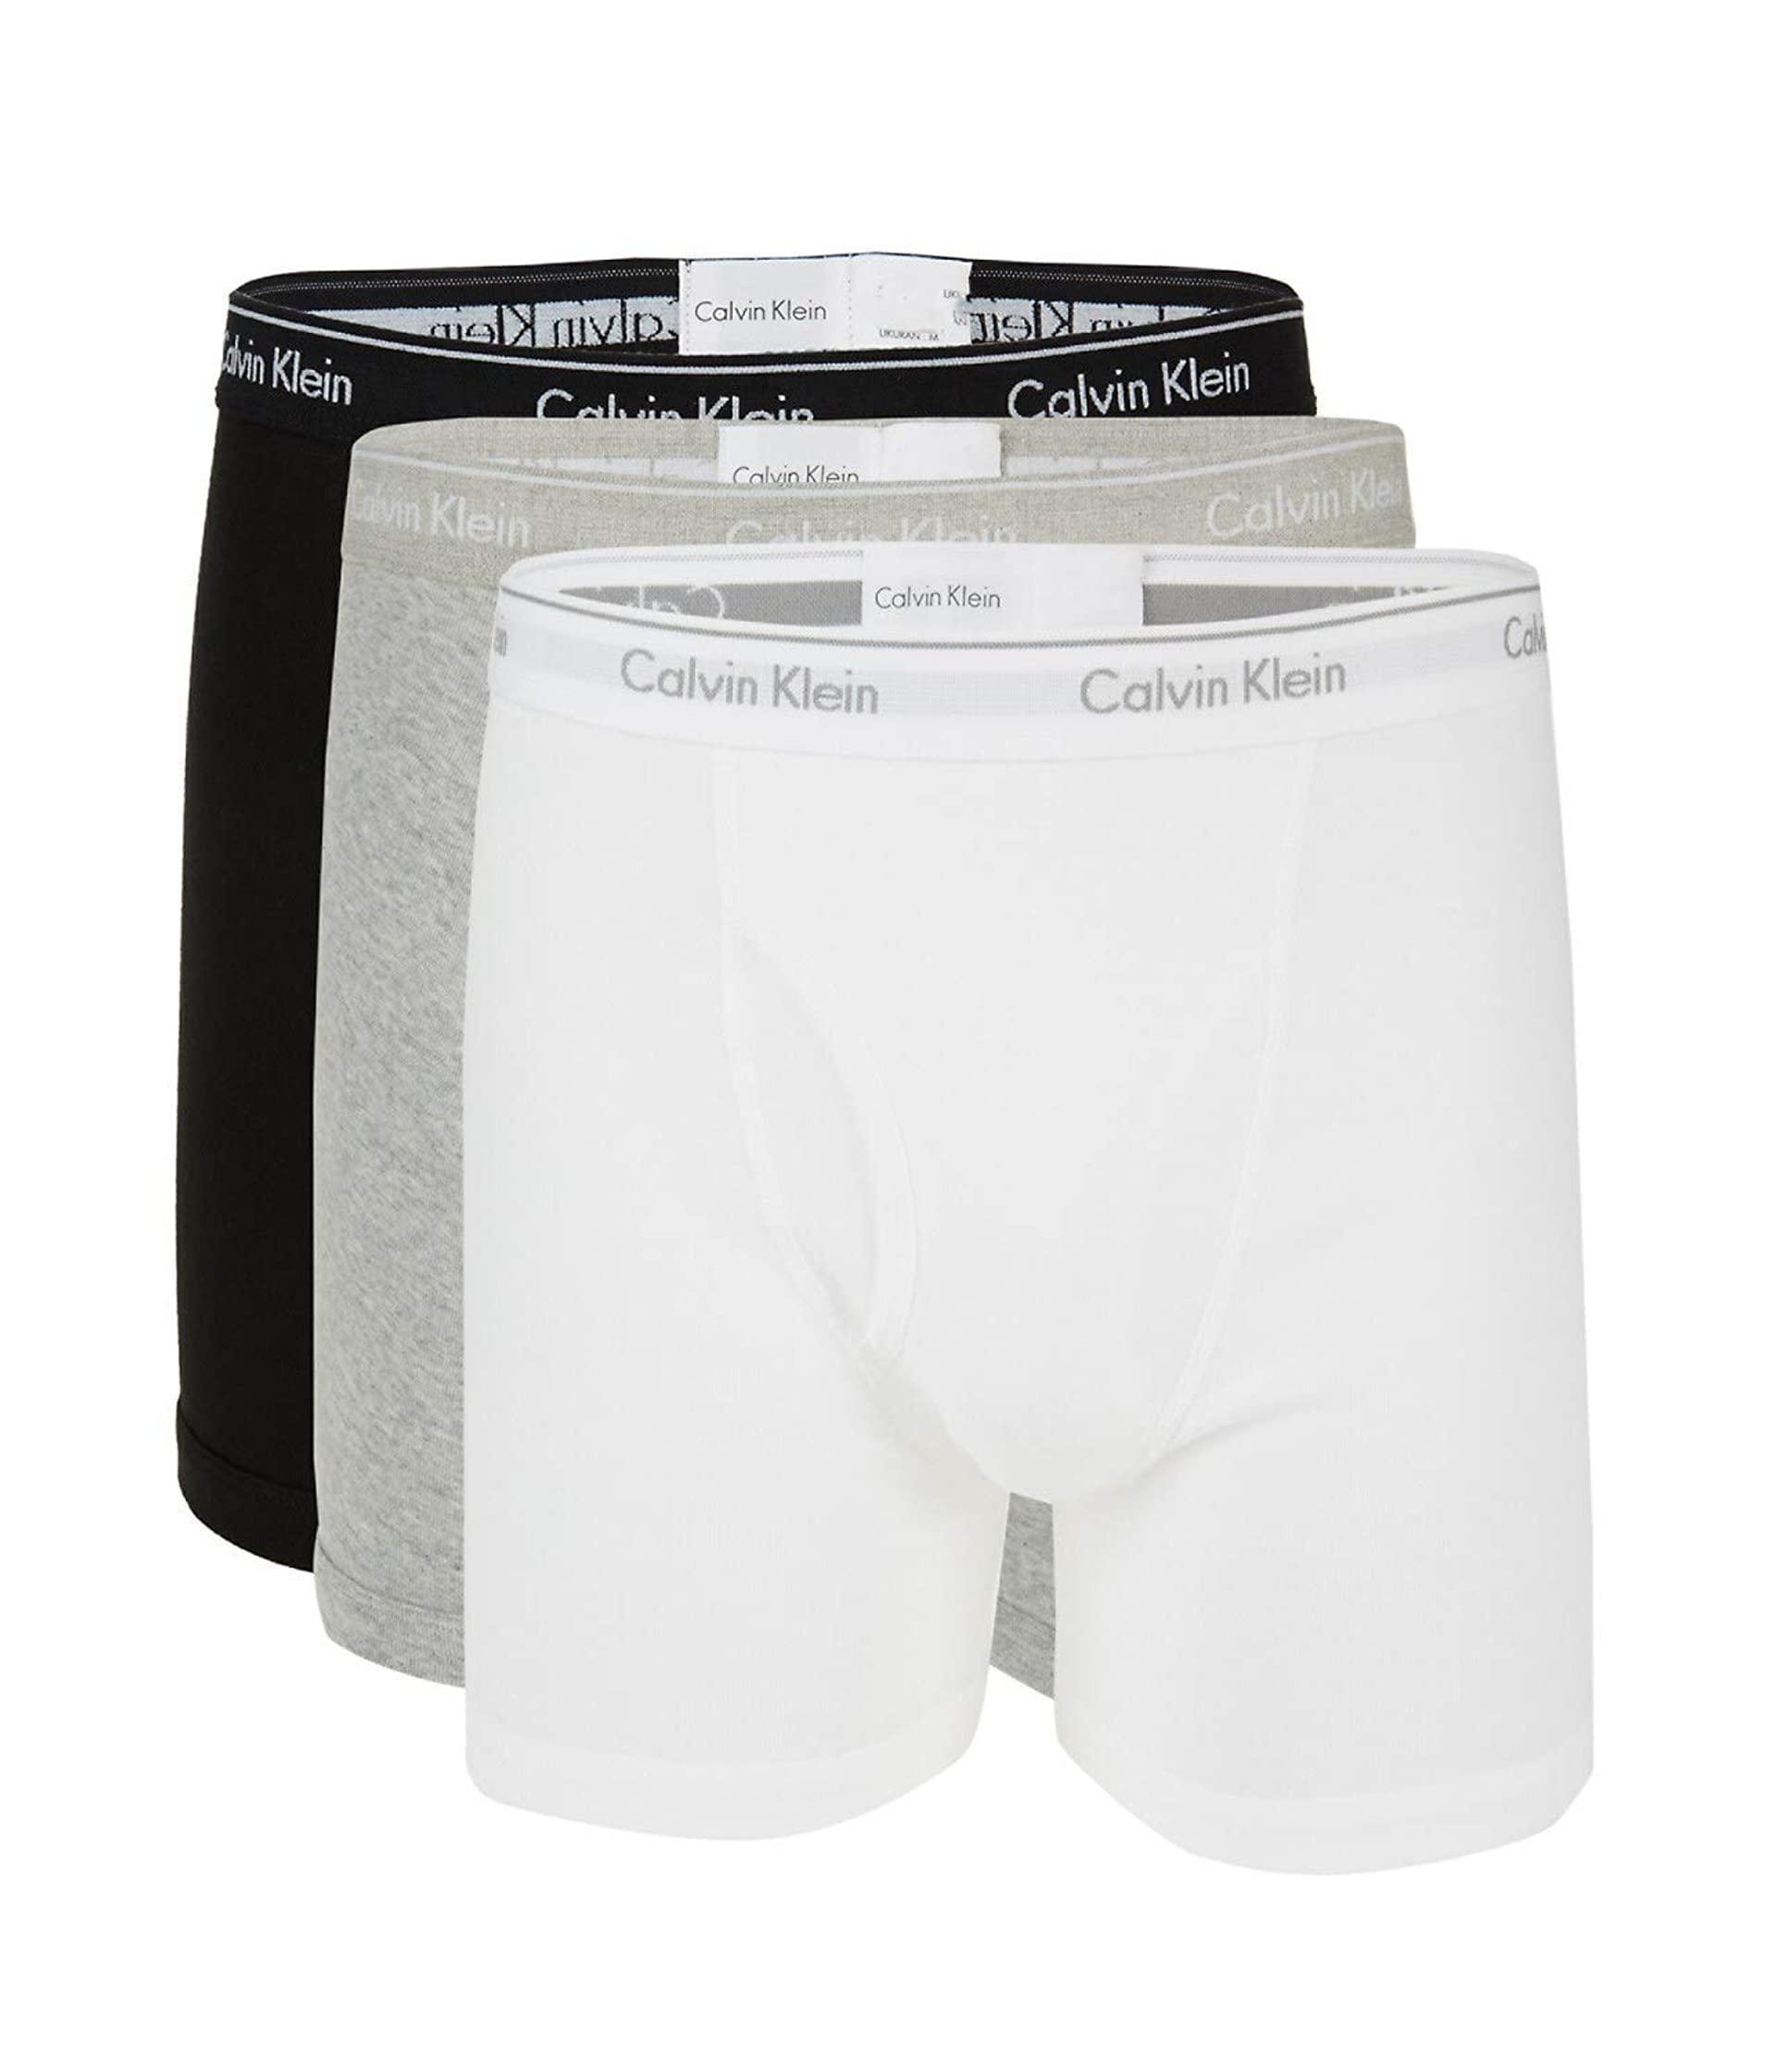 Calvin Klein 100% Cotton Boxer Briefs in Black, White, Grey Heather (White)  for Men - Save 65% - Lyst